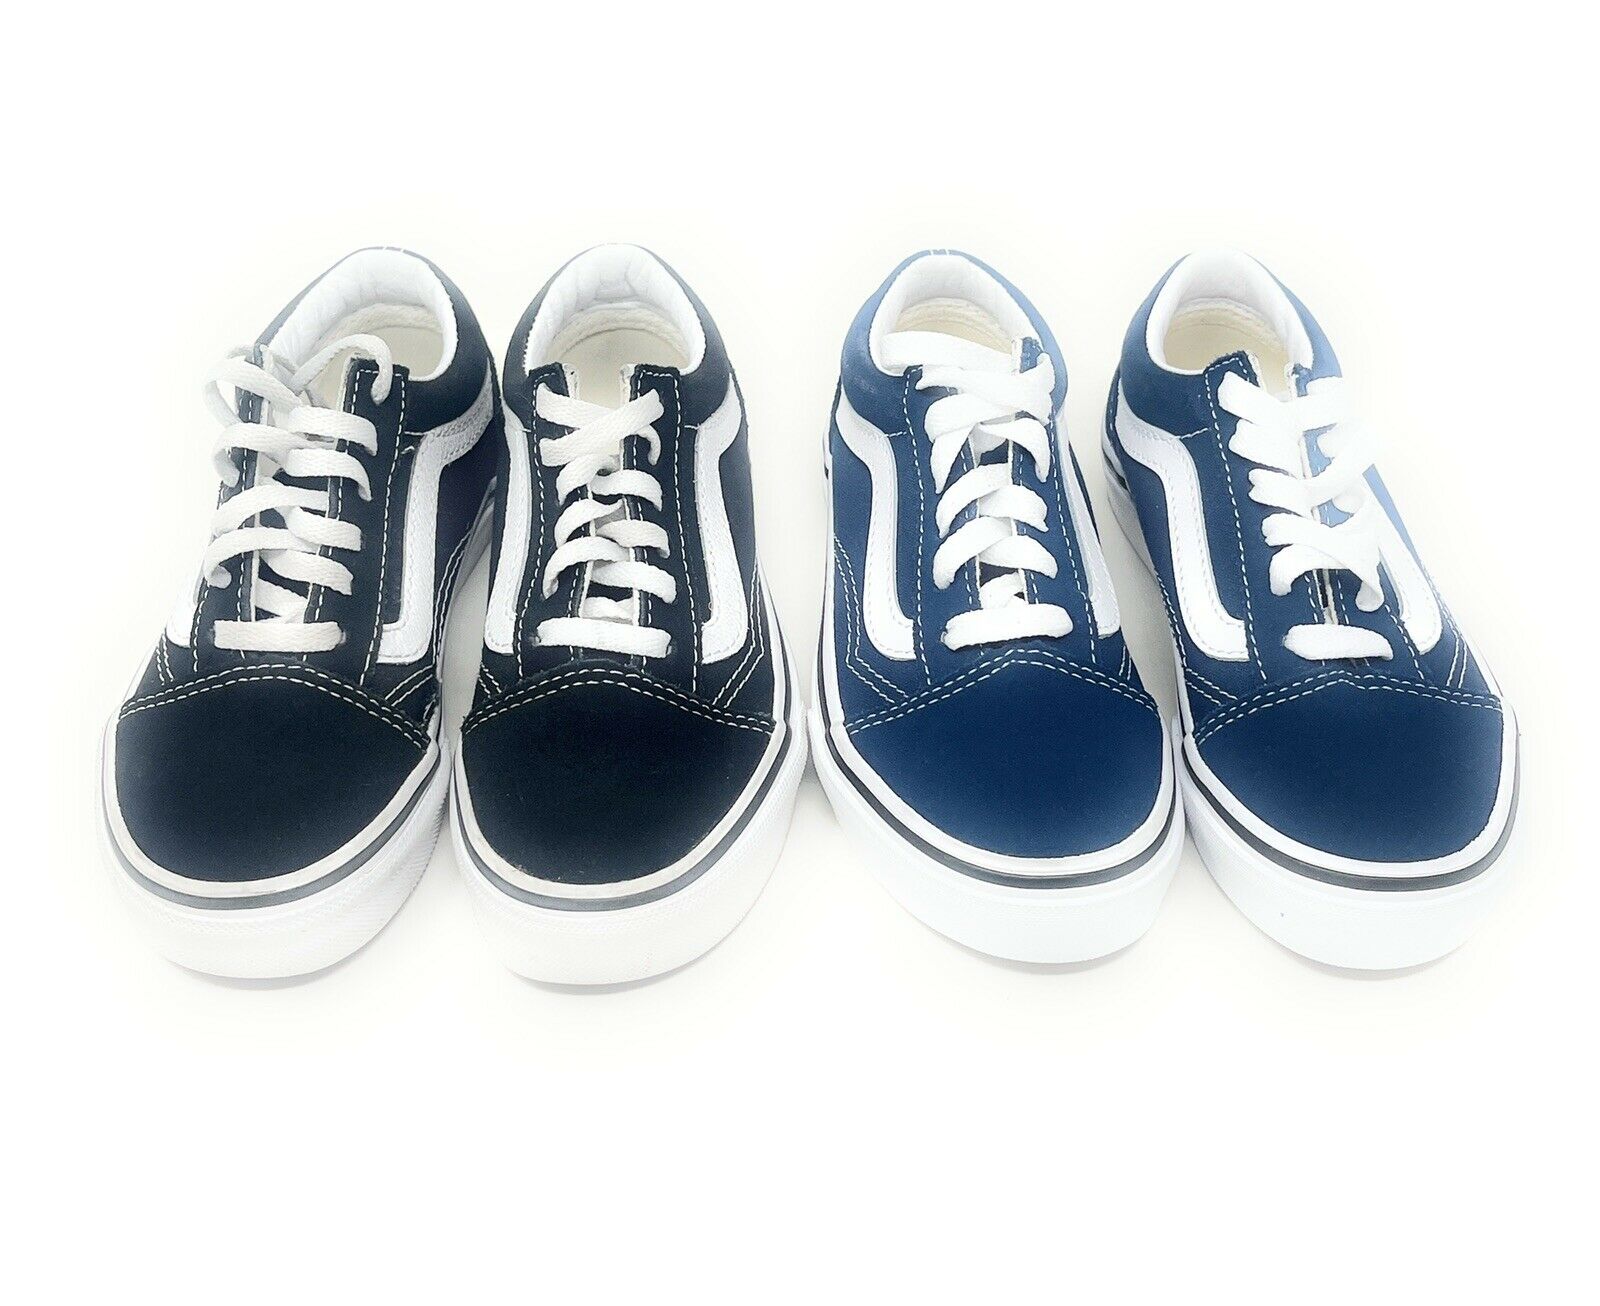 Vans Youth Kids Children Sz 12c Low Top Black/Blue Lace Up Unisex Shoes 2 Pairs